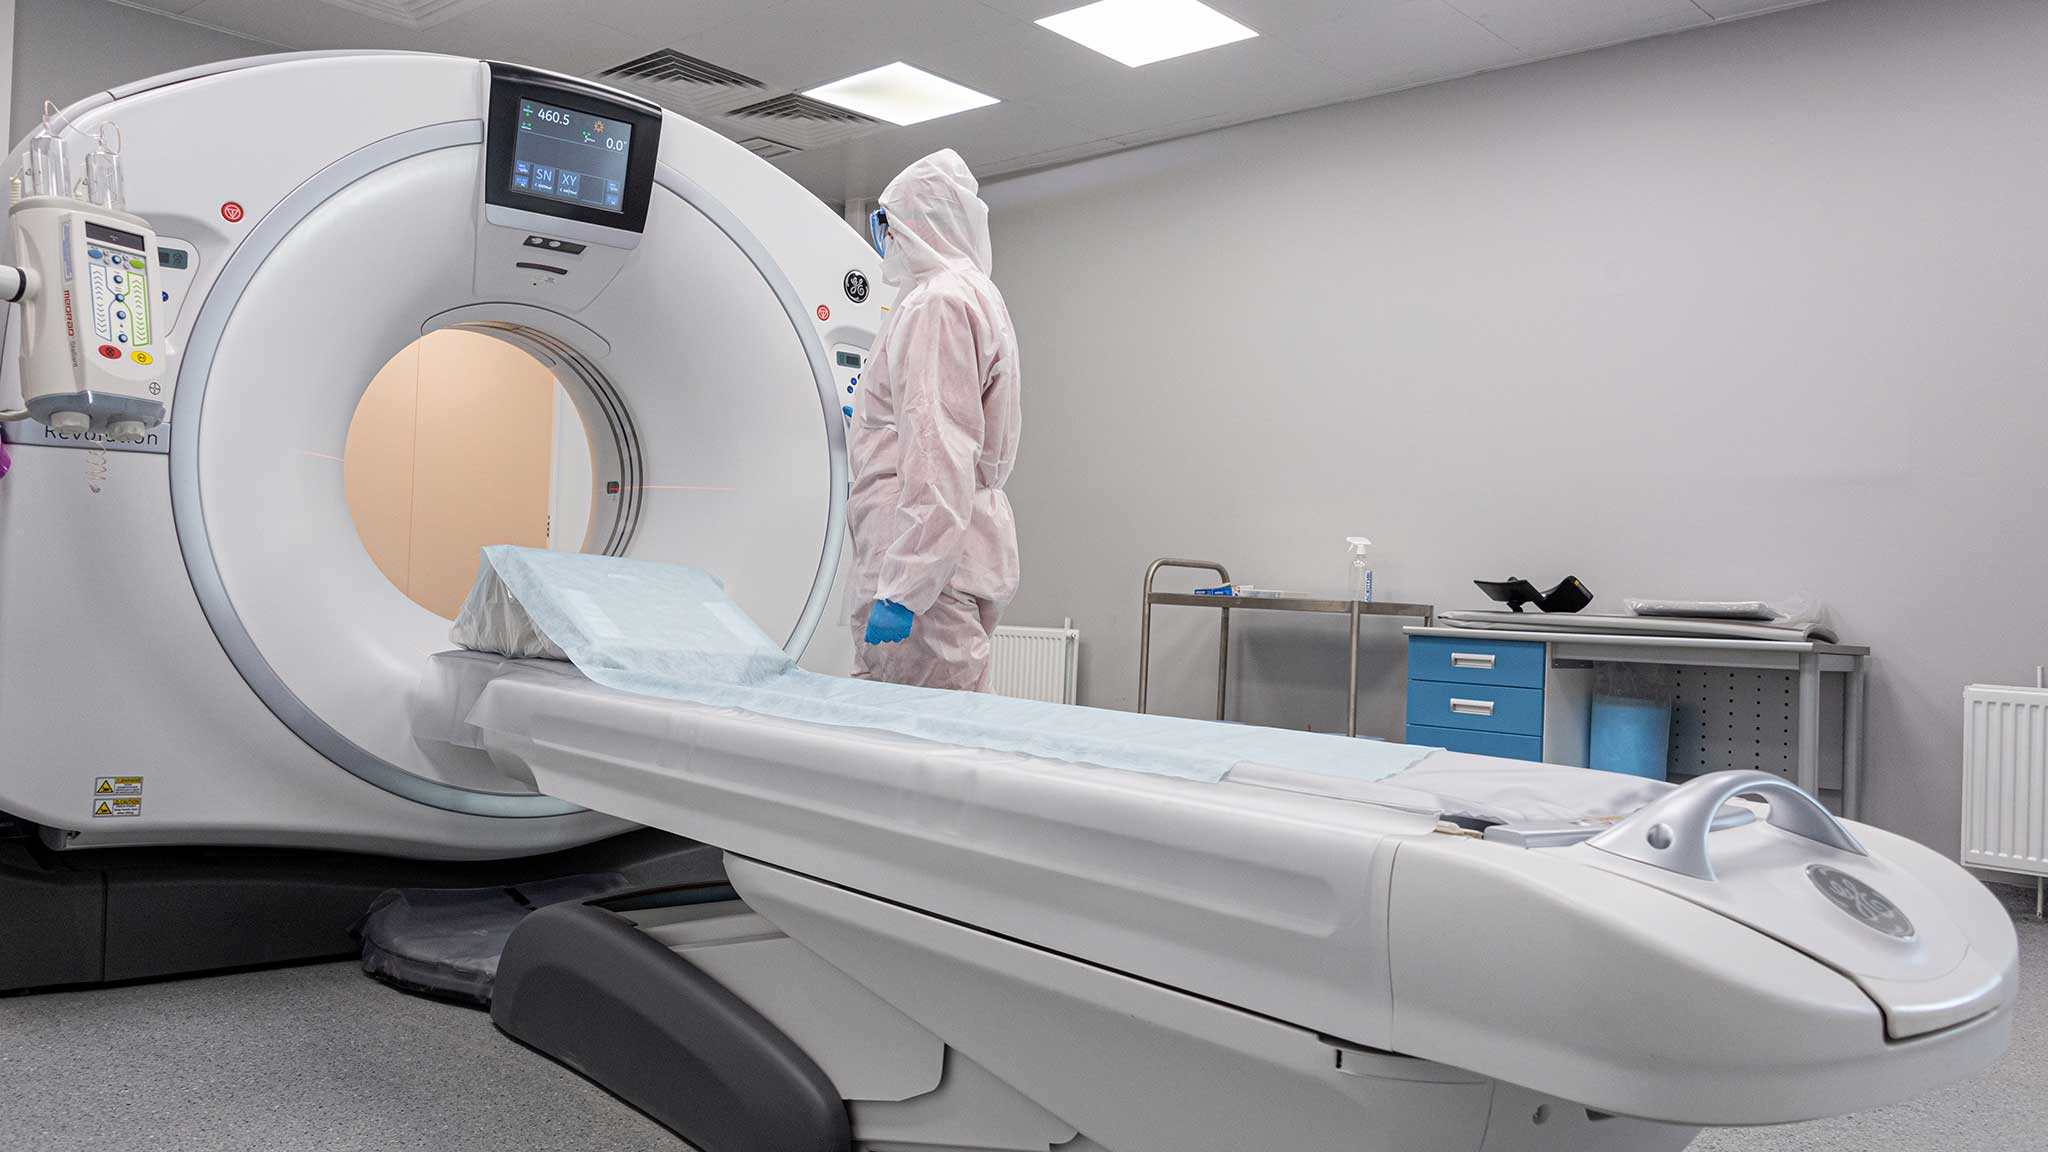 Частные клиники в КР снизили цены на МРТ до 20% после бесед с ГКНБ